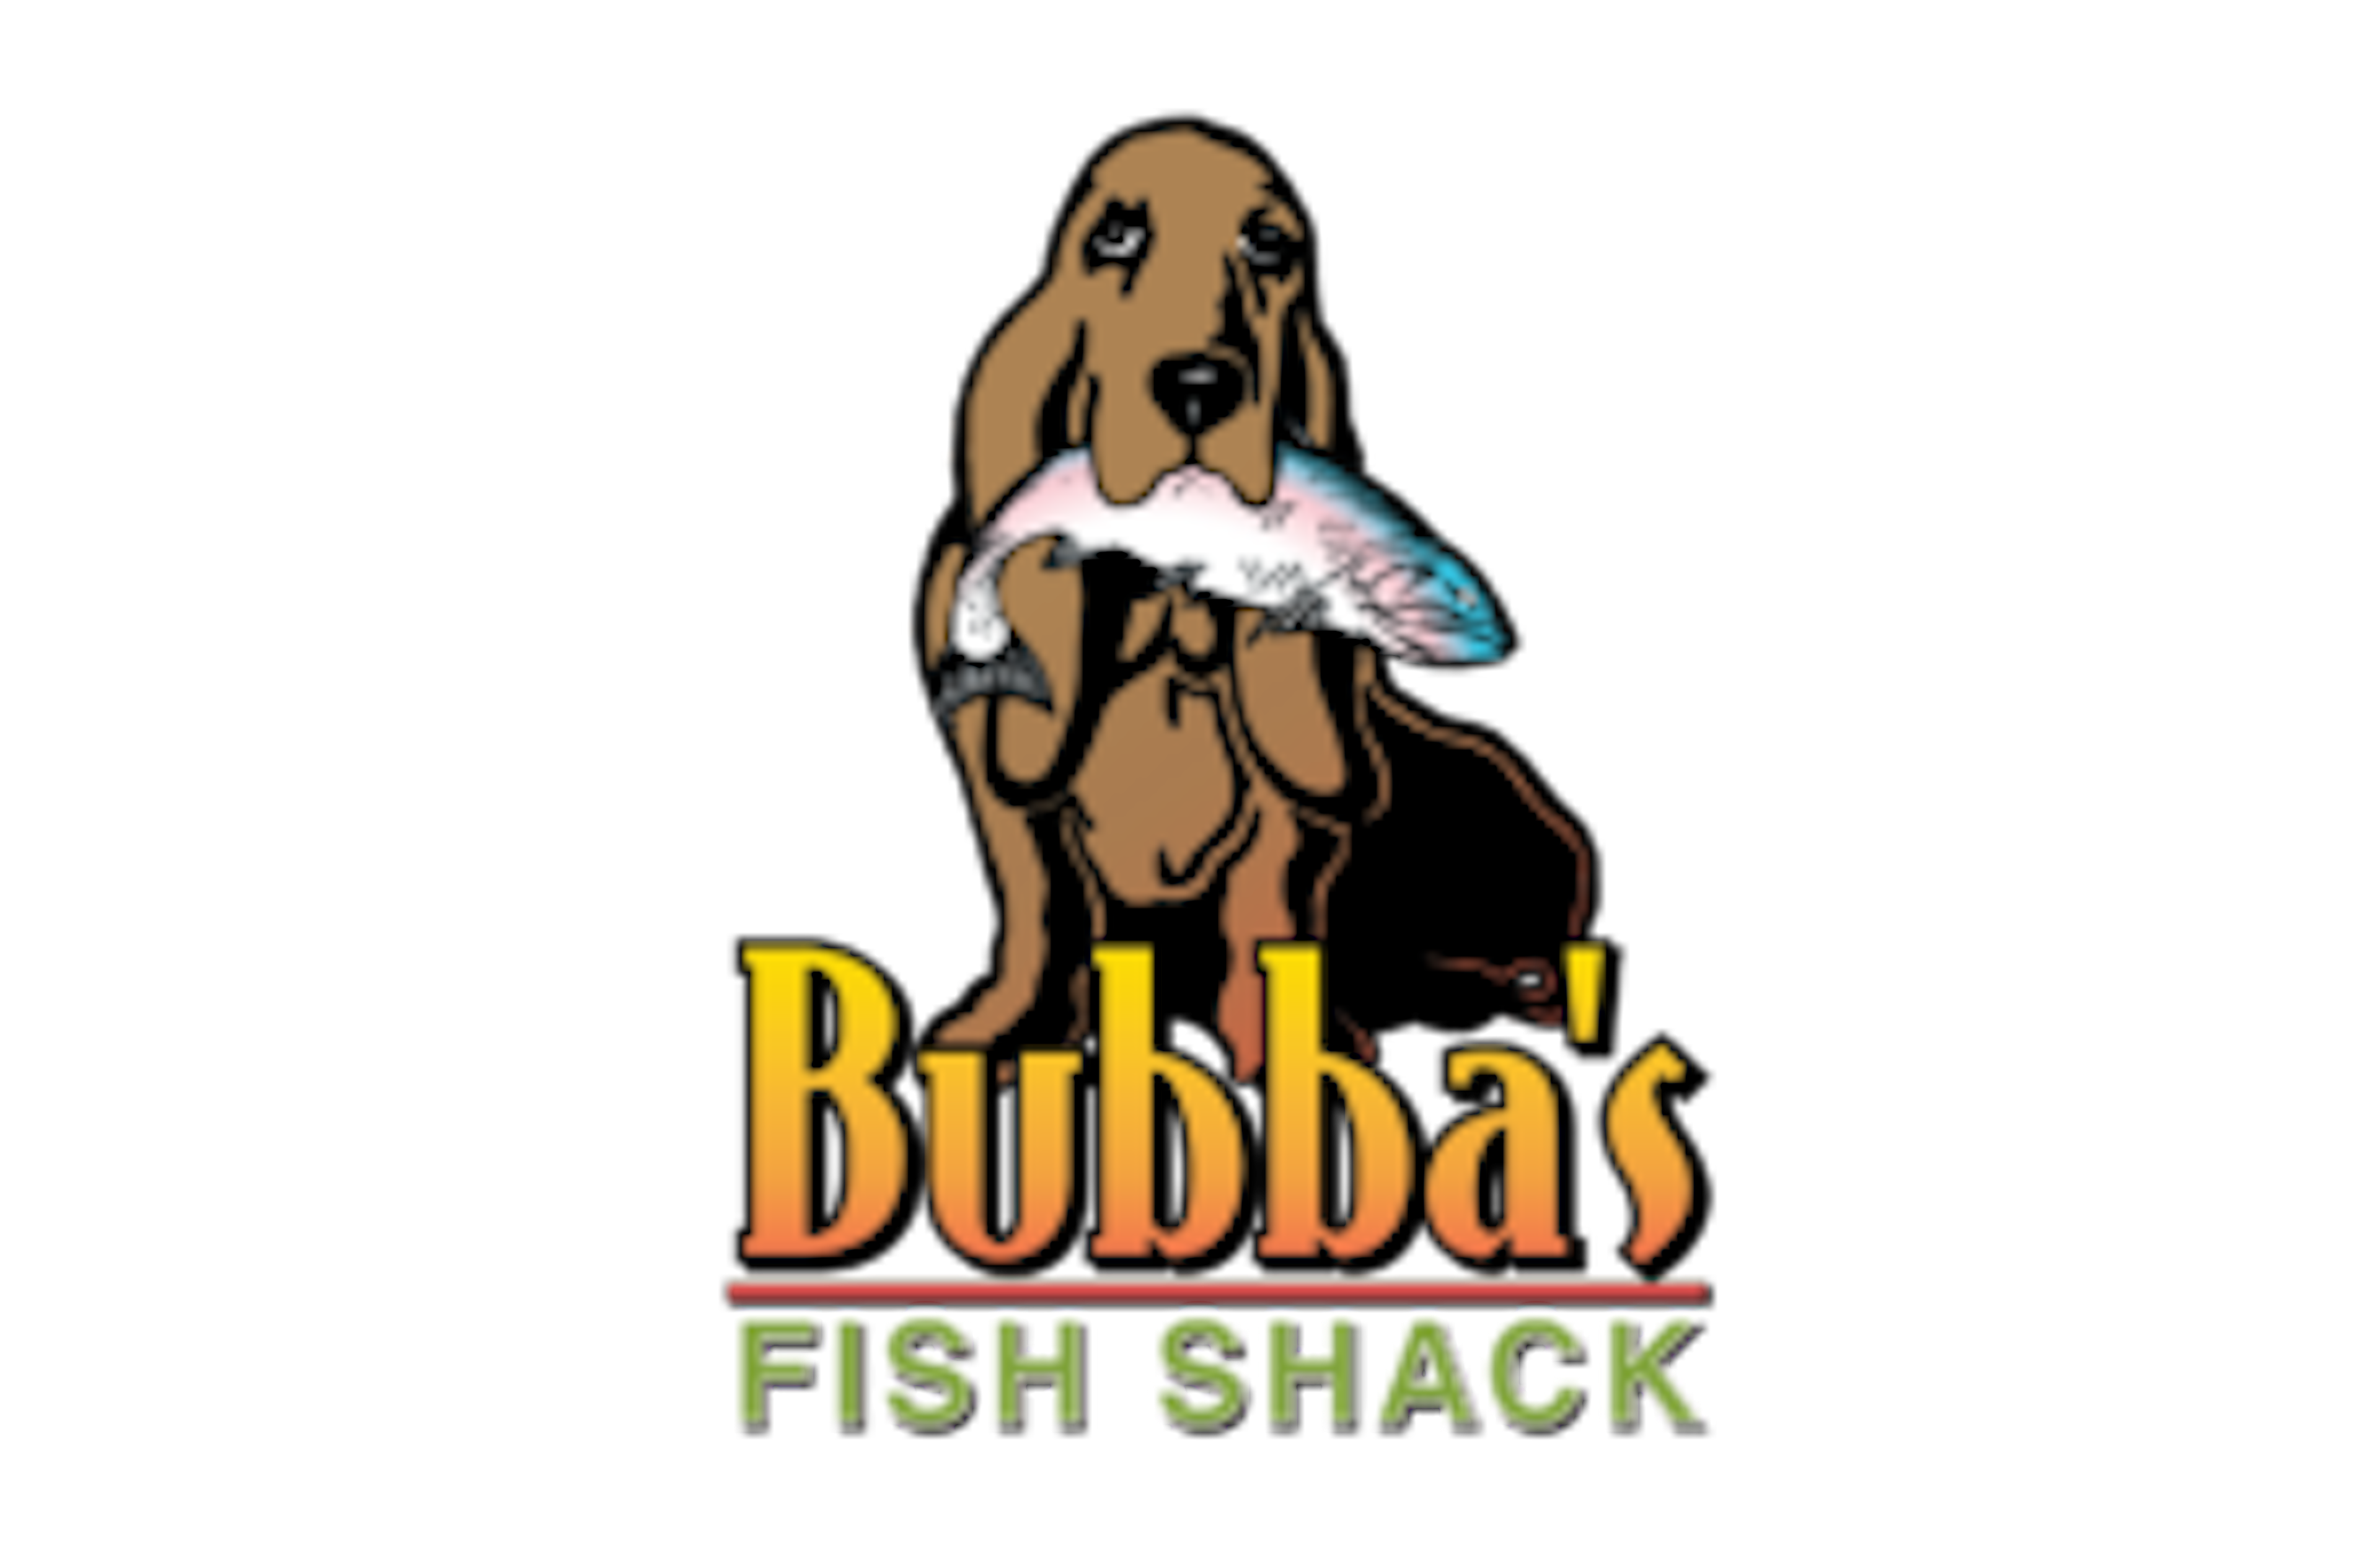 Bubba’s Fish Shack